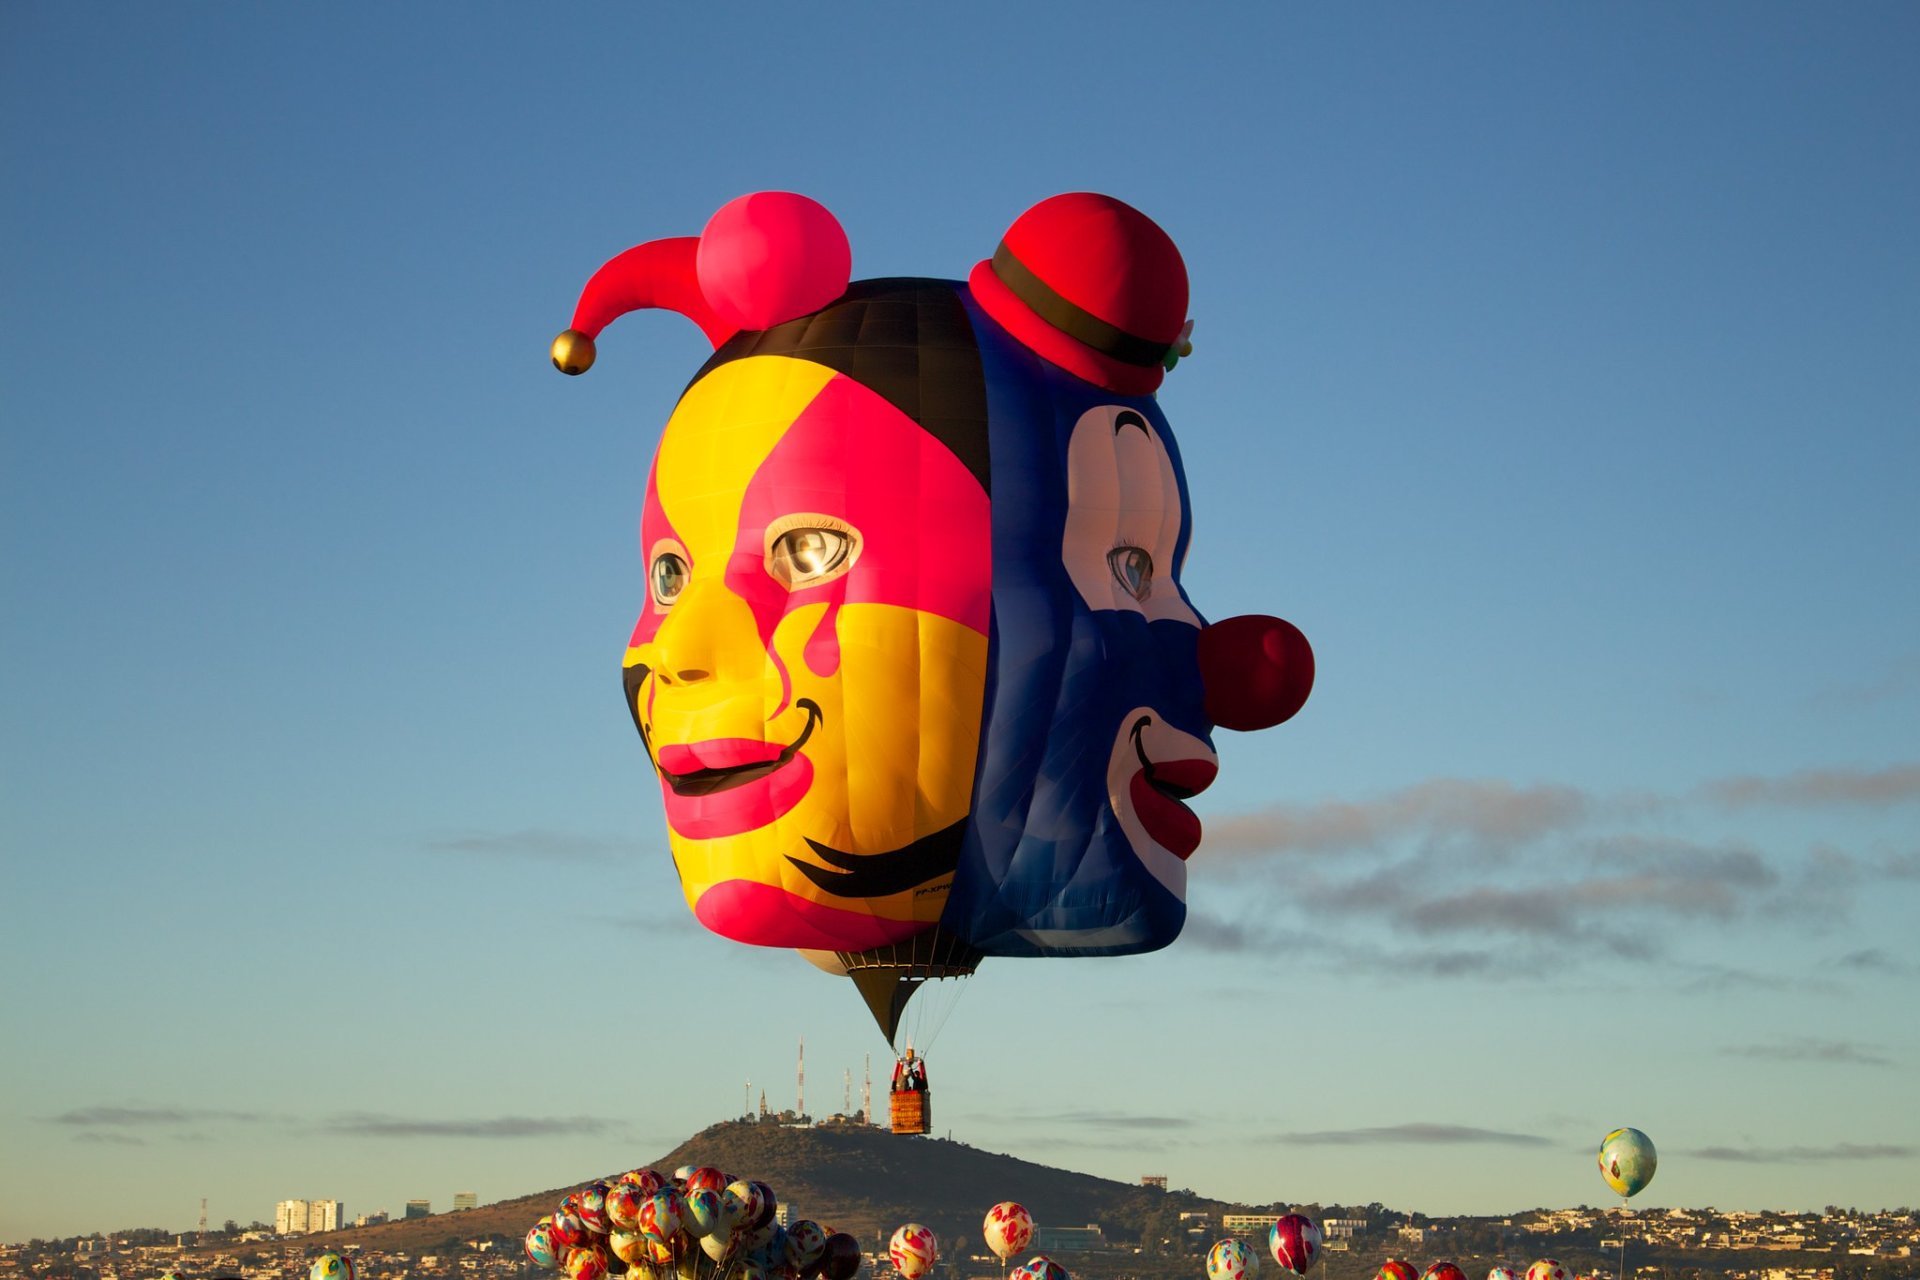 Festival Del Globo (International Balloon Festival)